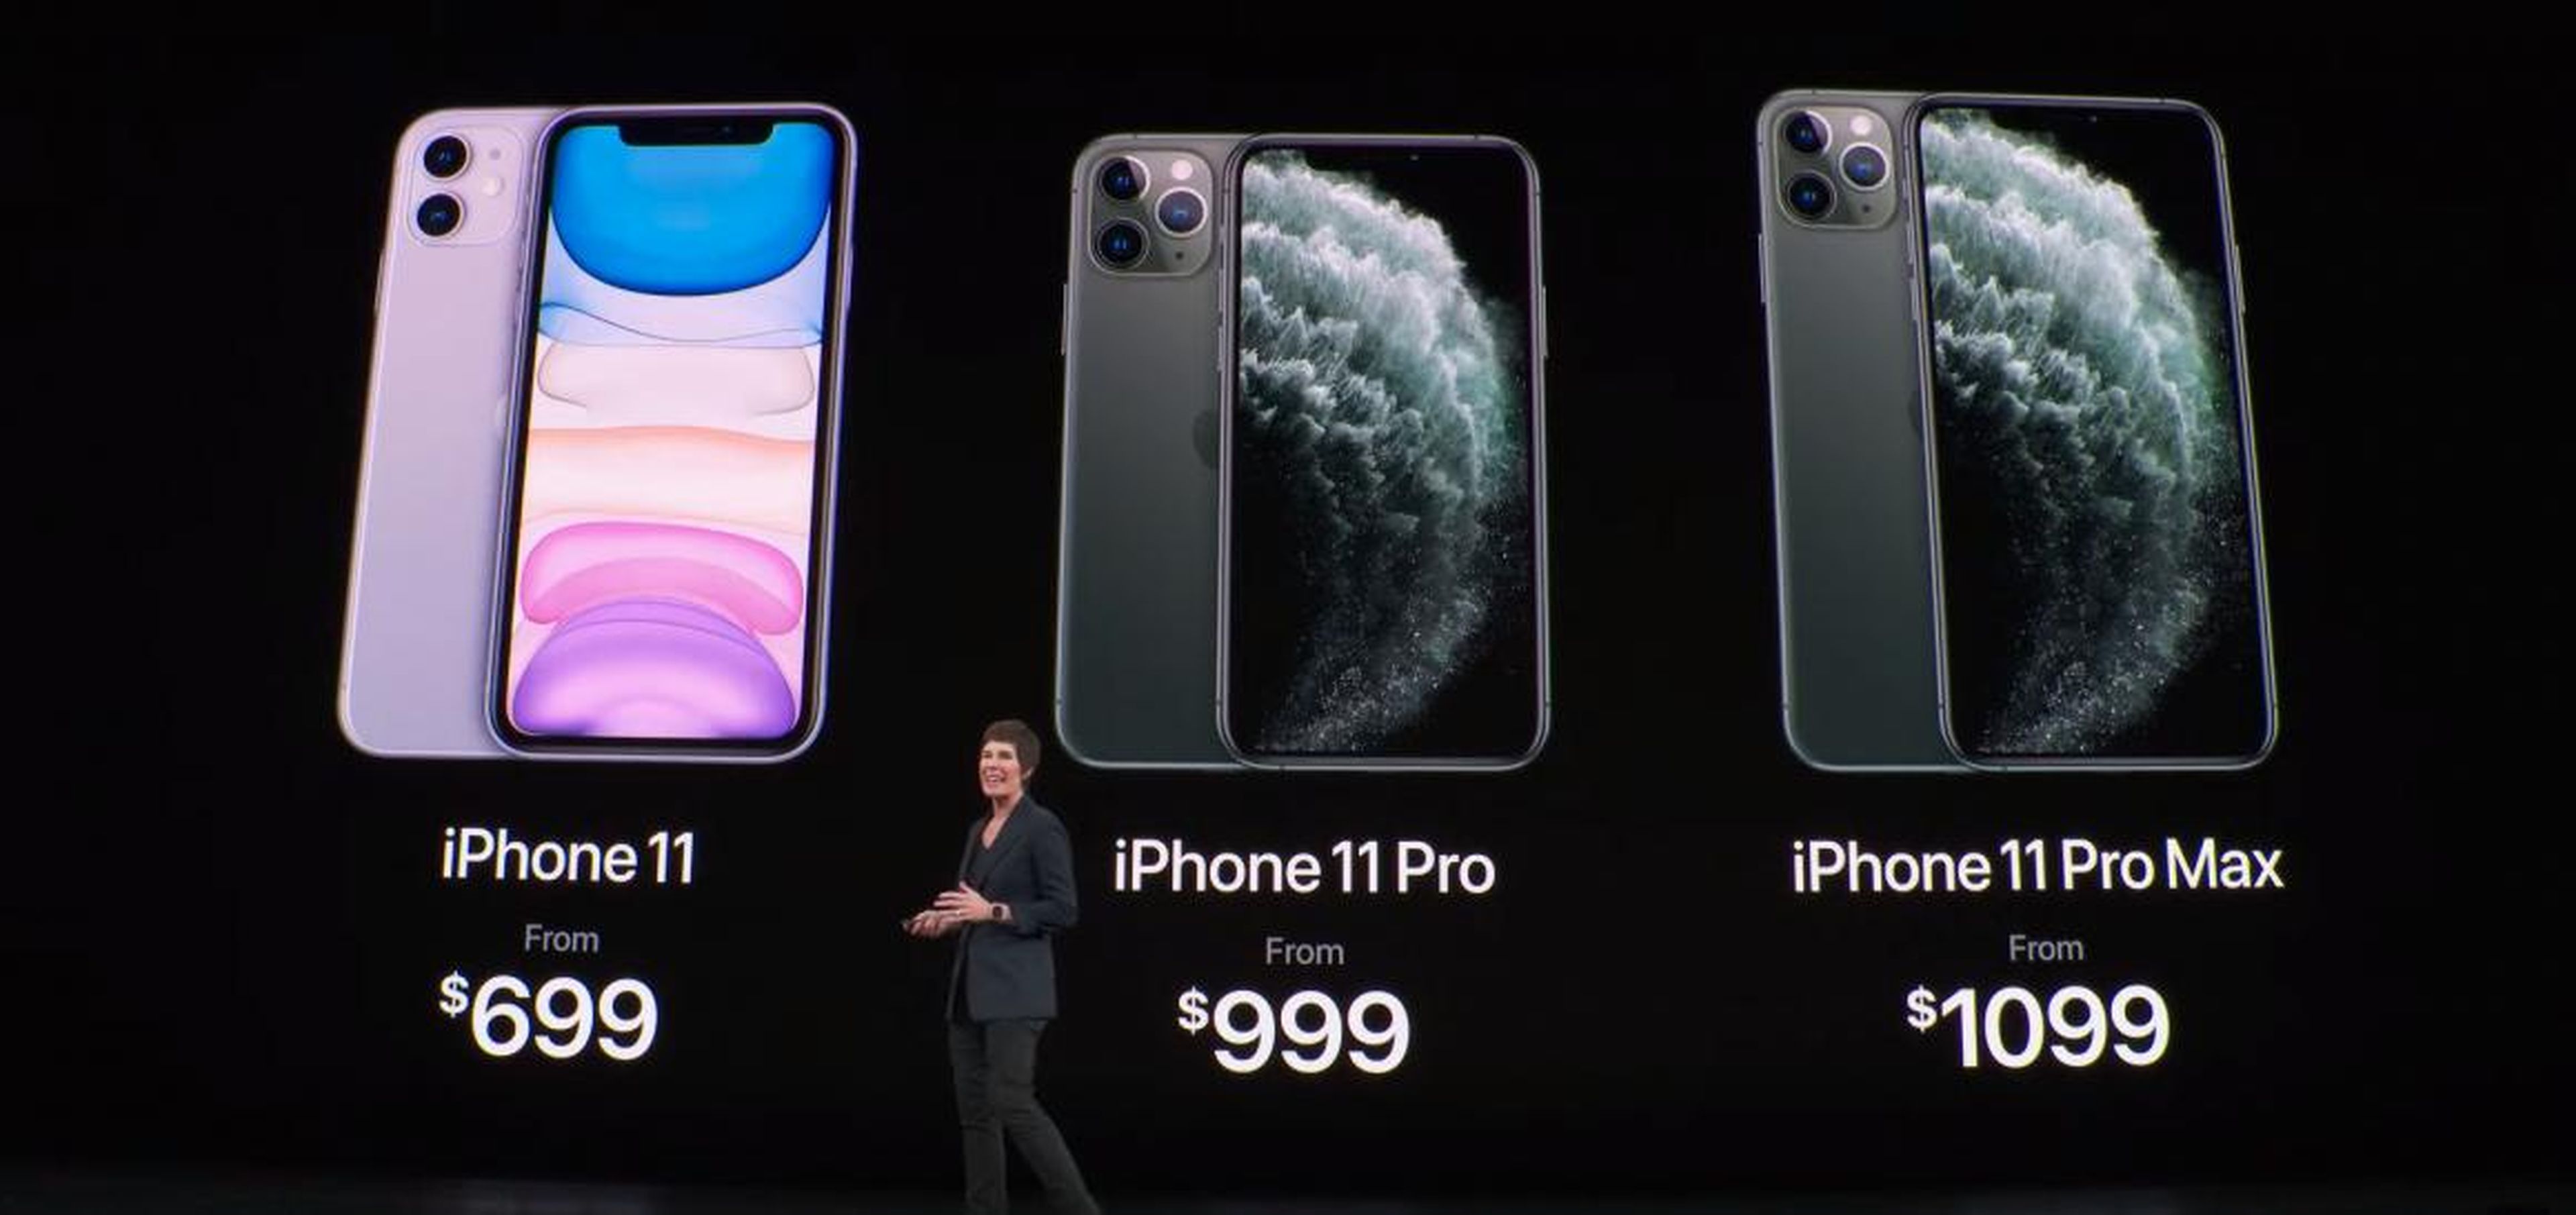 Dónde comprar un iPhone 11 al mejor precio? iPhone 11, 11 Pro y 11 Pro Max